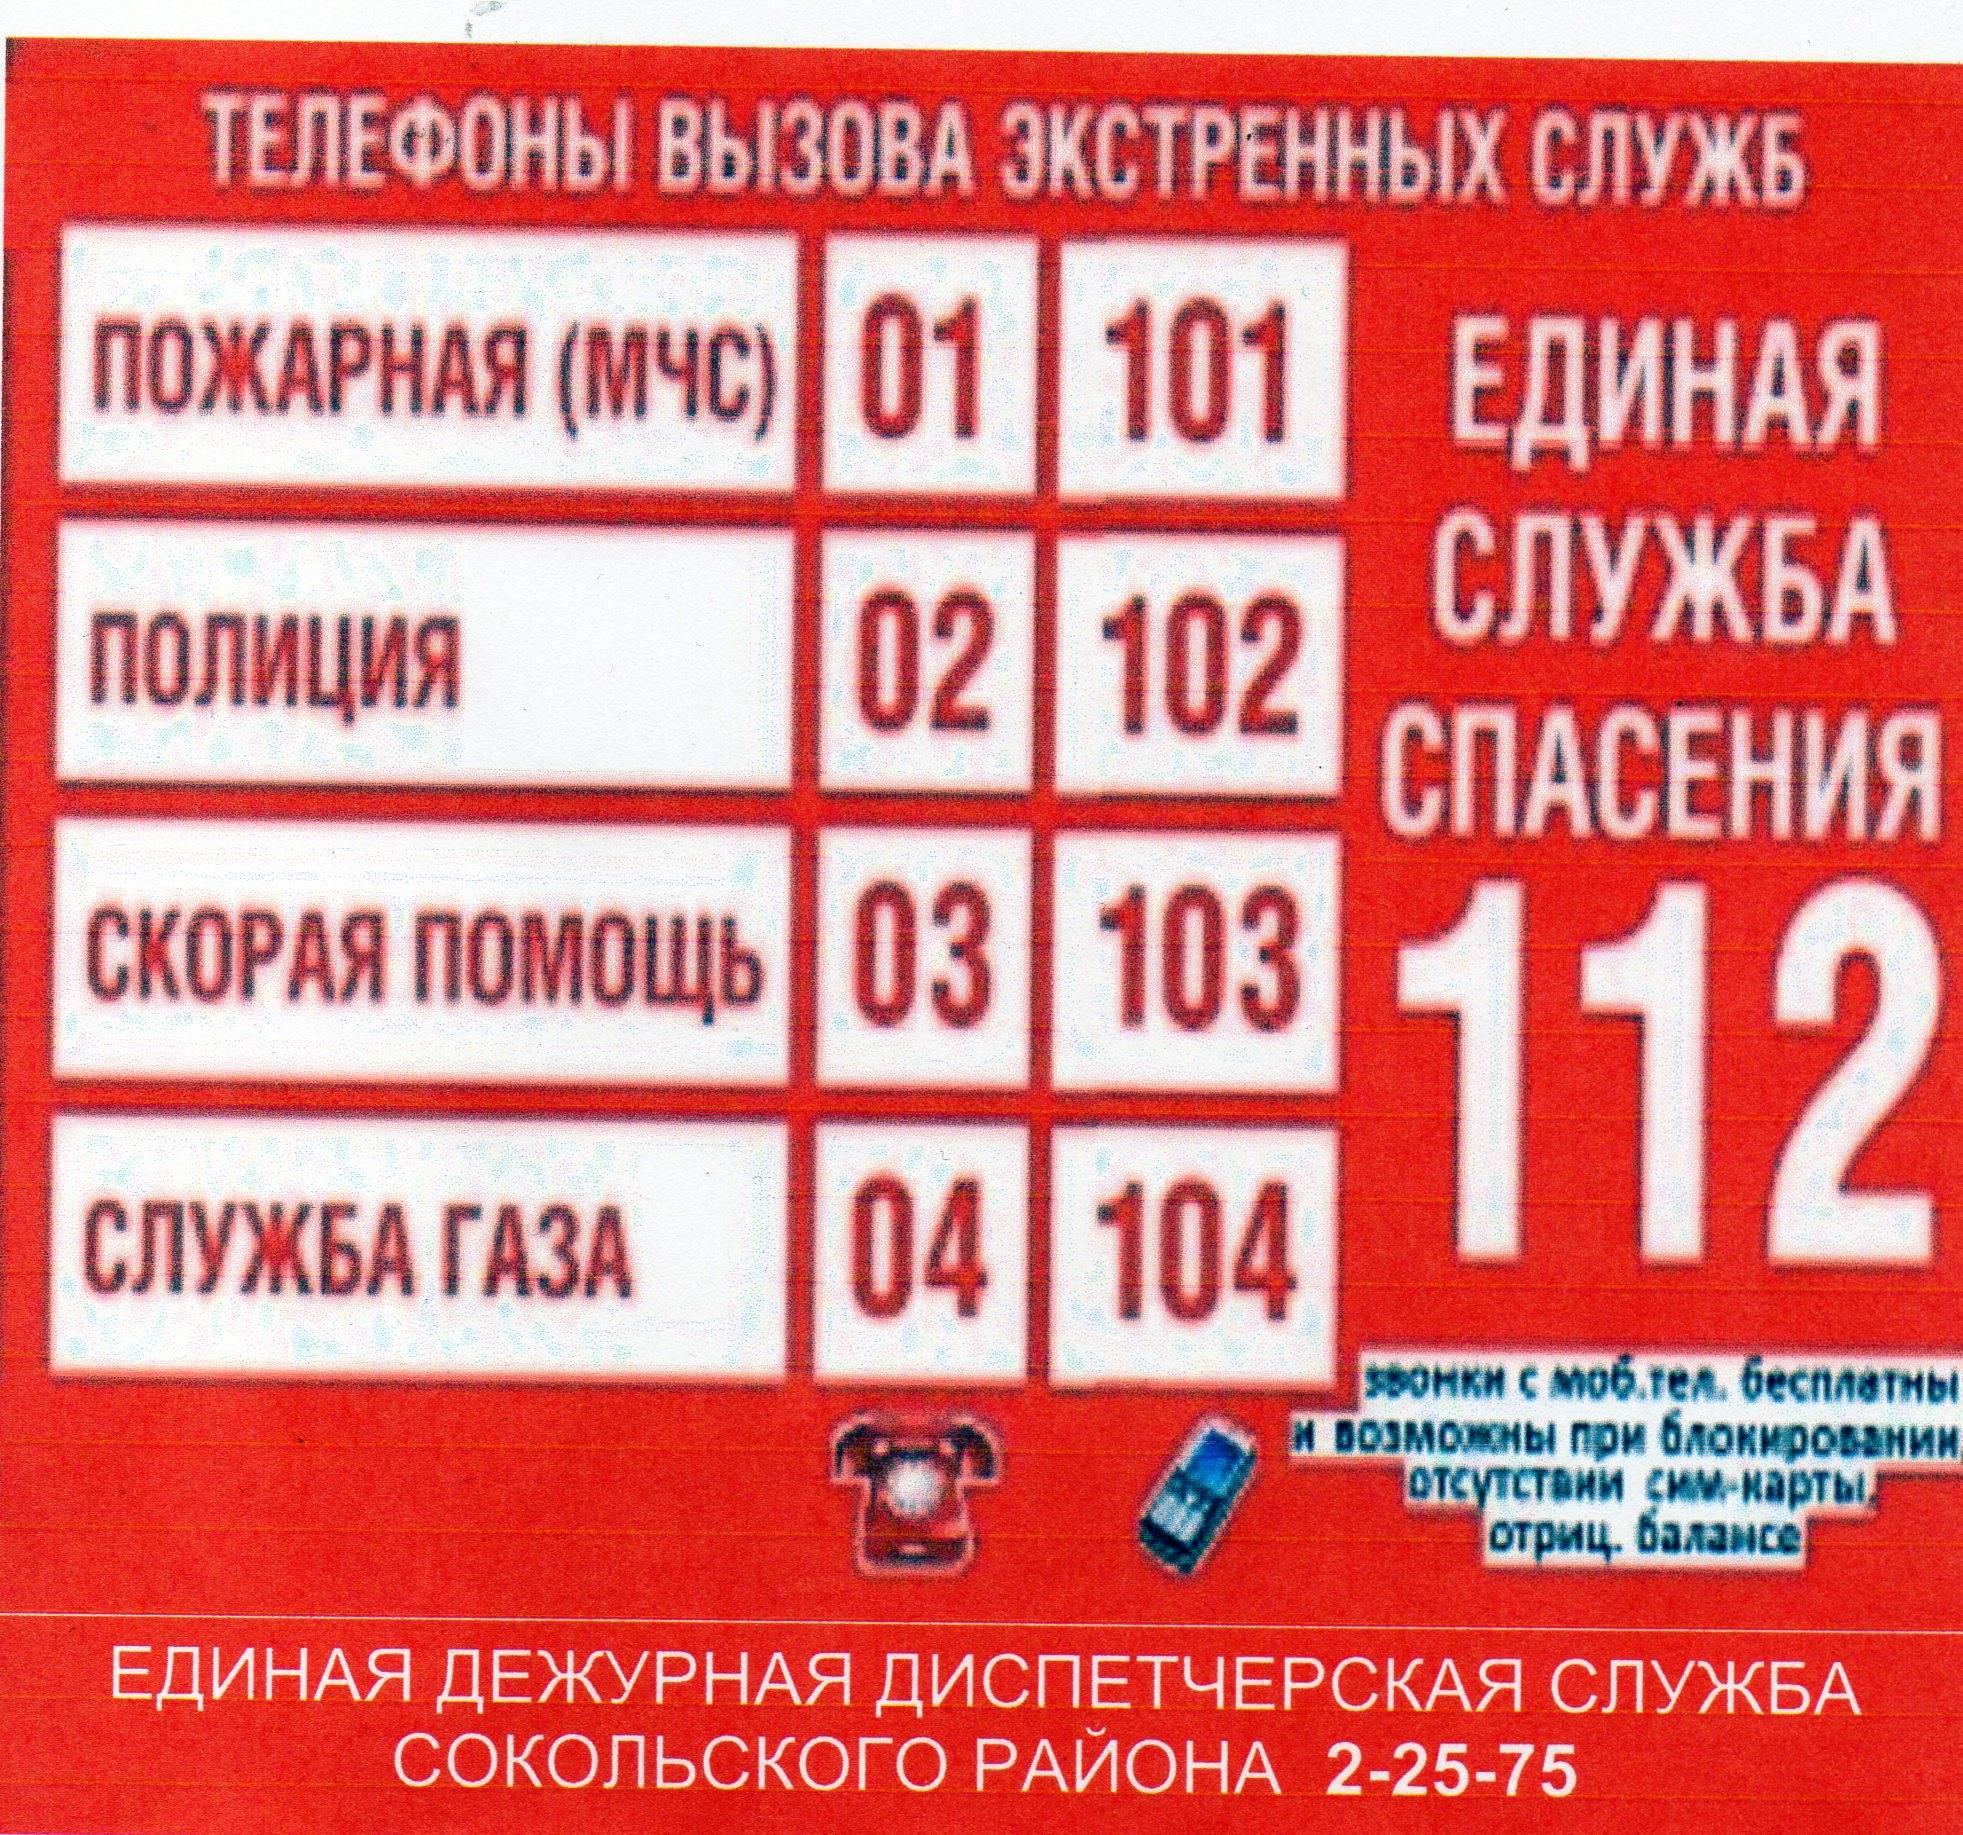 Номер телефона скорой помощи с мобильного через сотовых операторов и без сим-карты